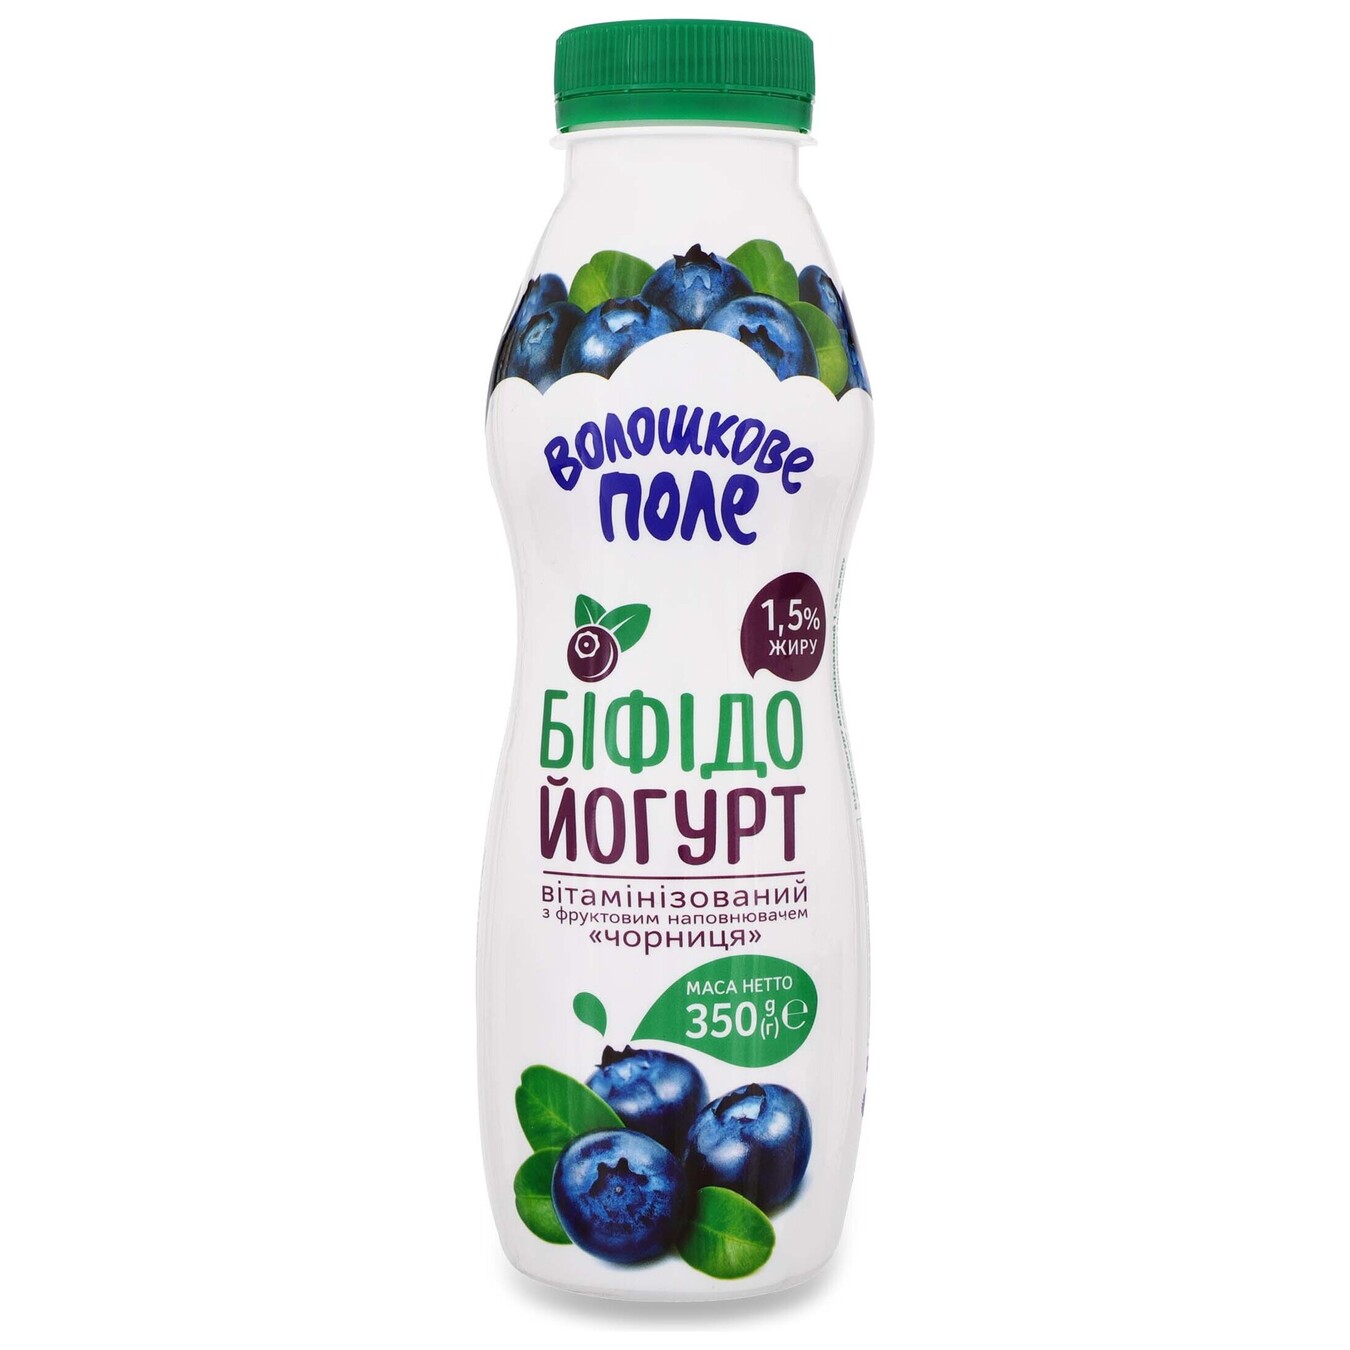 Bifidoyogurt Cornfield blueberry 15% 350g